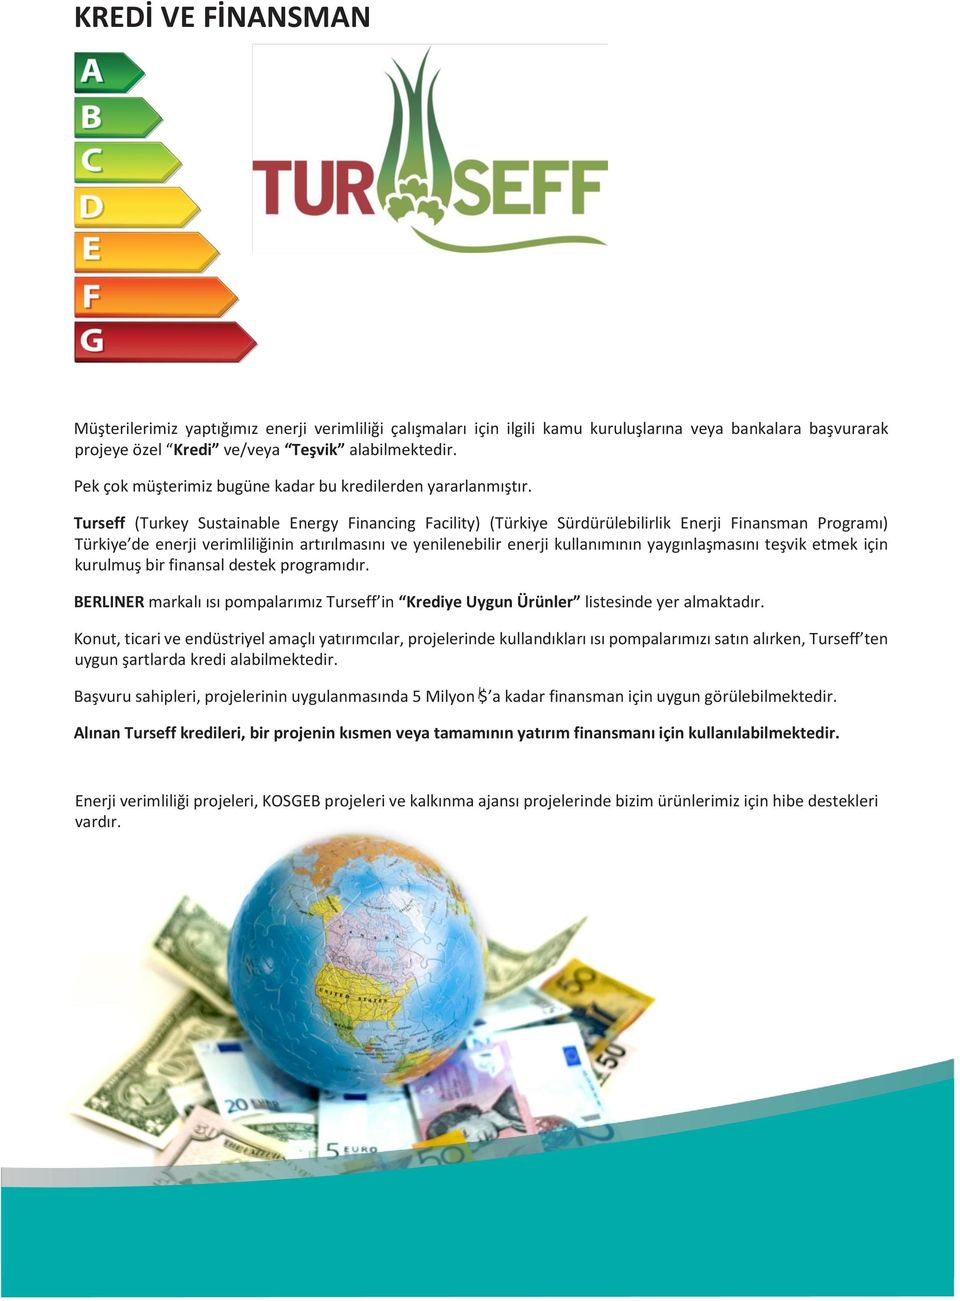 Turseff (Turkey Sustainable Energy Financing Facility) (Türkiye Sürdürülebilirlik Enerji Finansman Programı) Türkiye de enerji verimliliğinin artırılmasını ve yenilenebilir enerji kullanımının